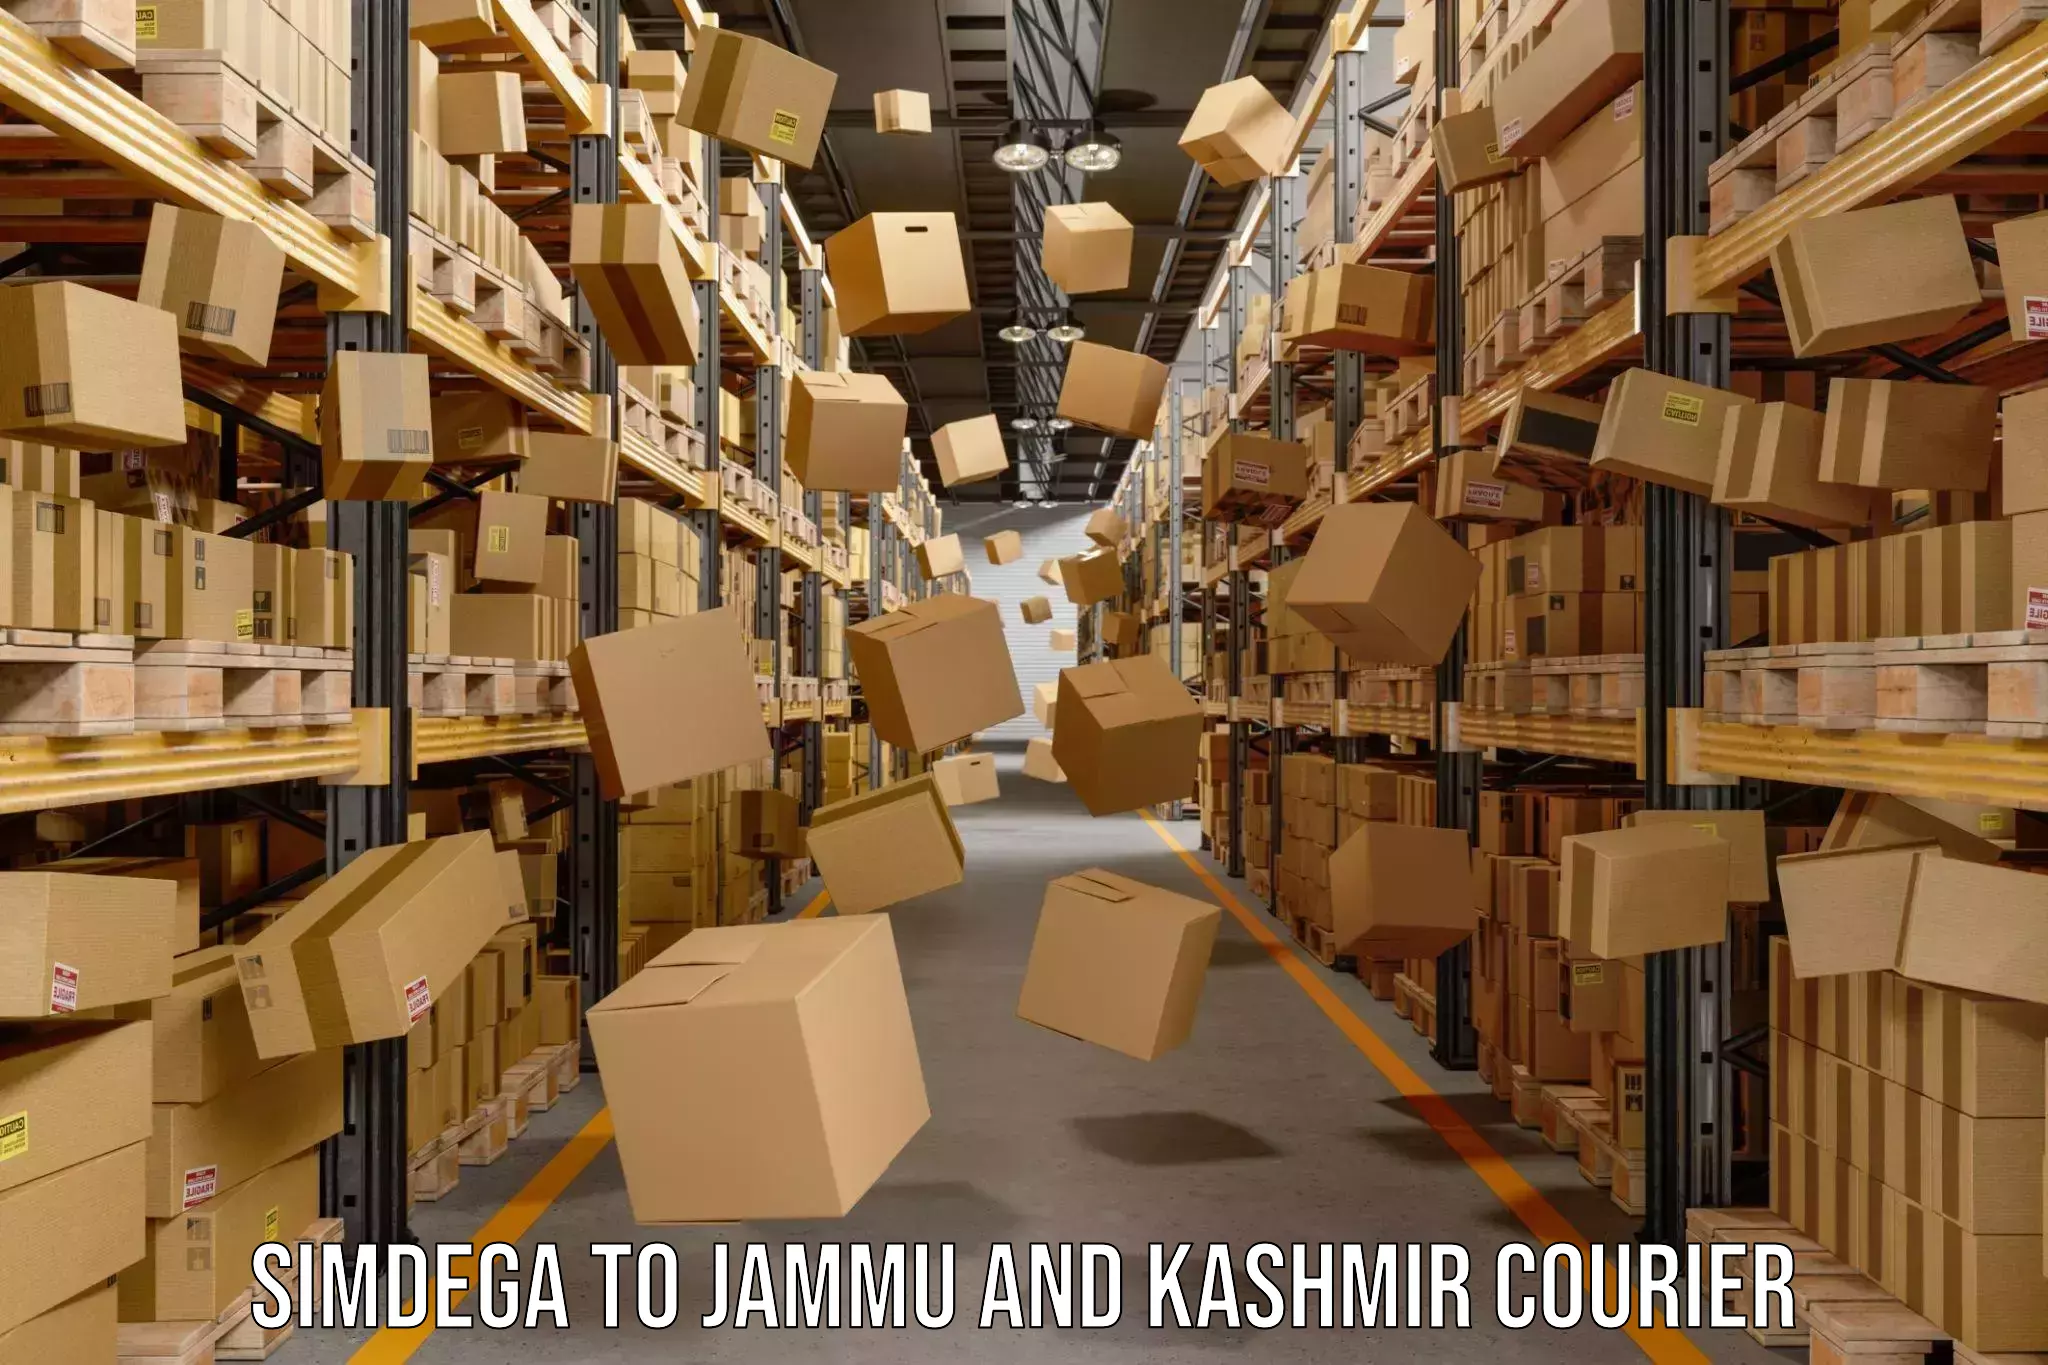 Digital shipping tools Simdega to Jammu and Kashmir